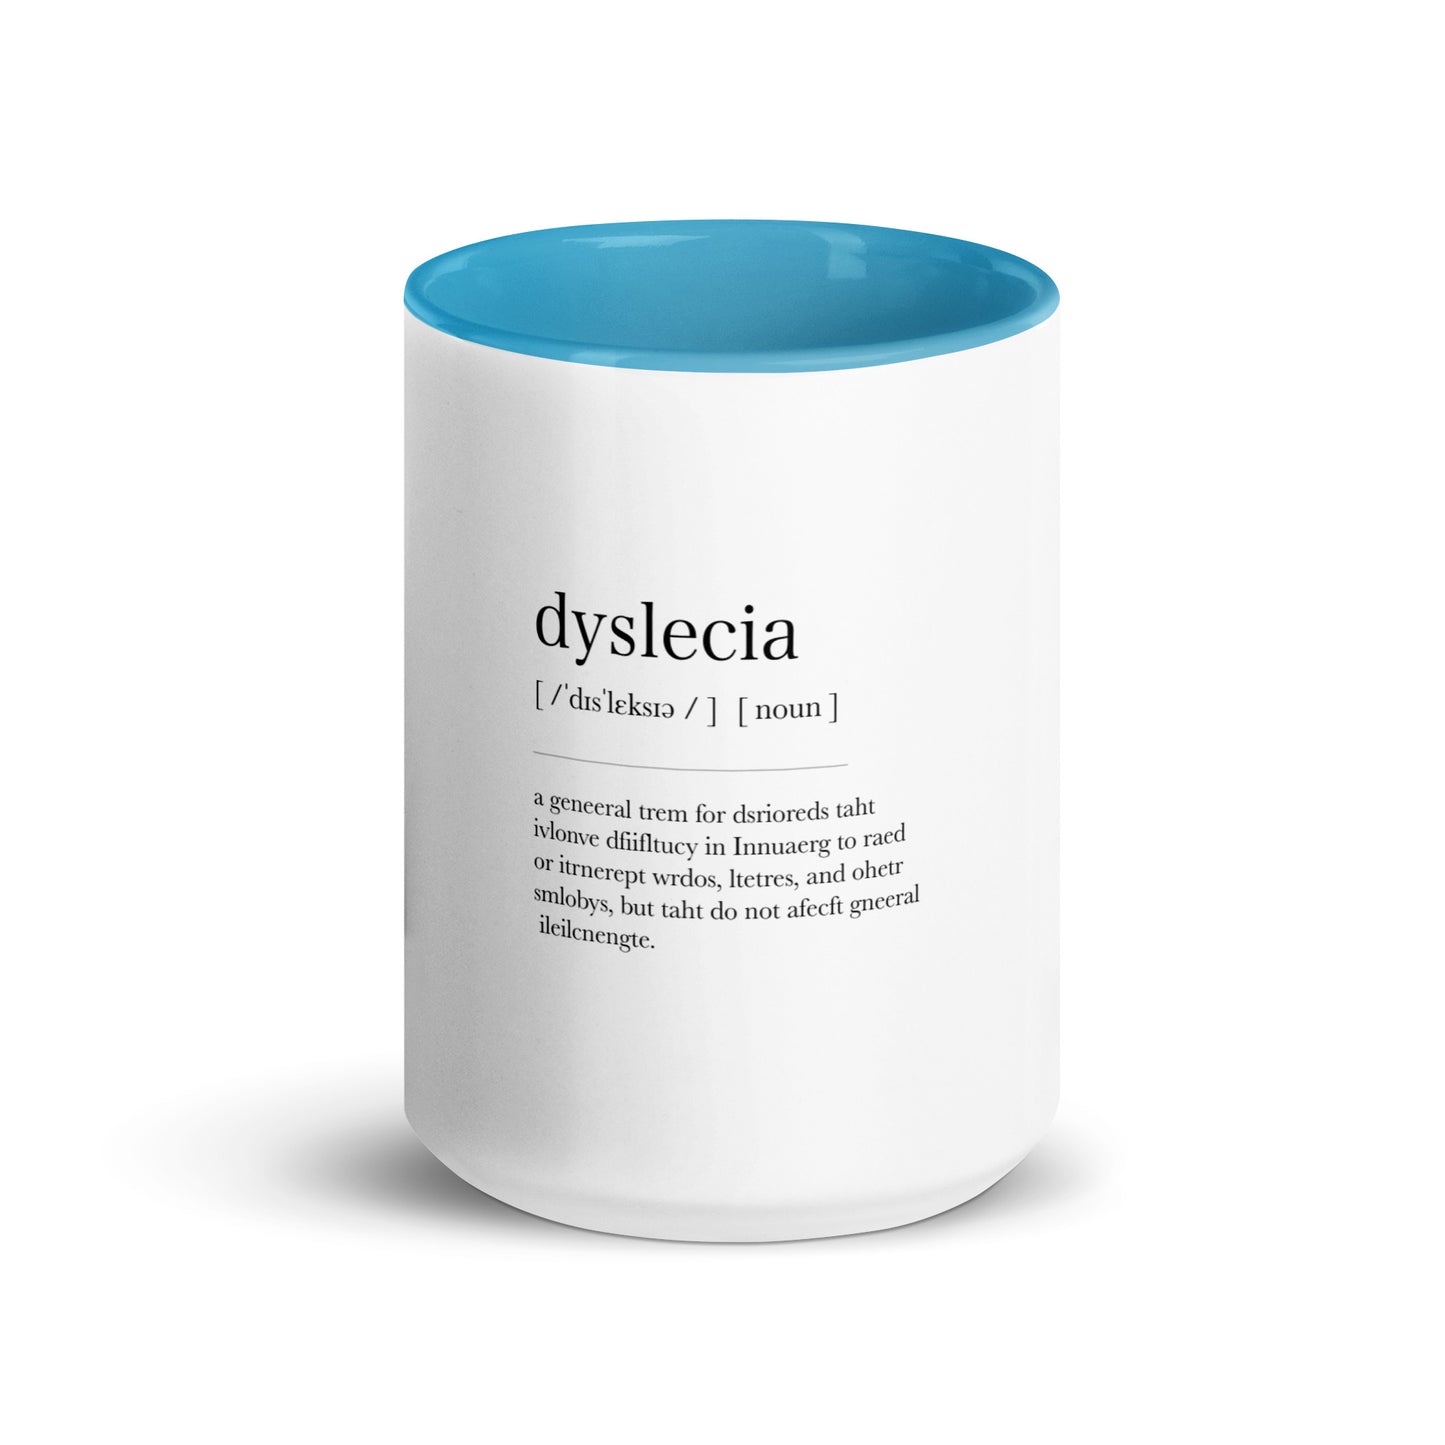 Dyslexia Definition Mug